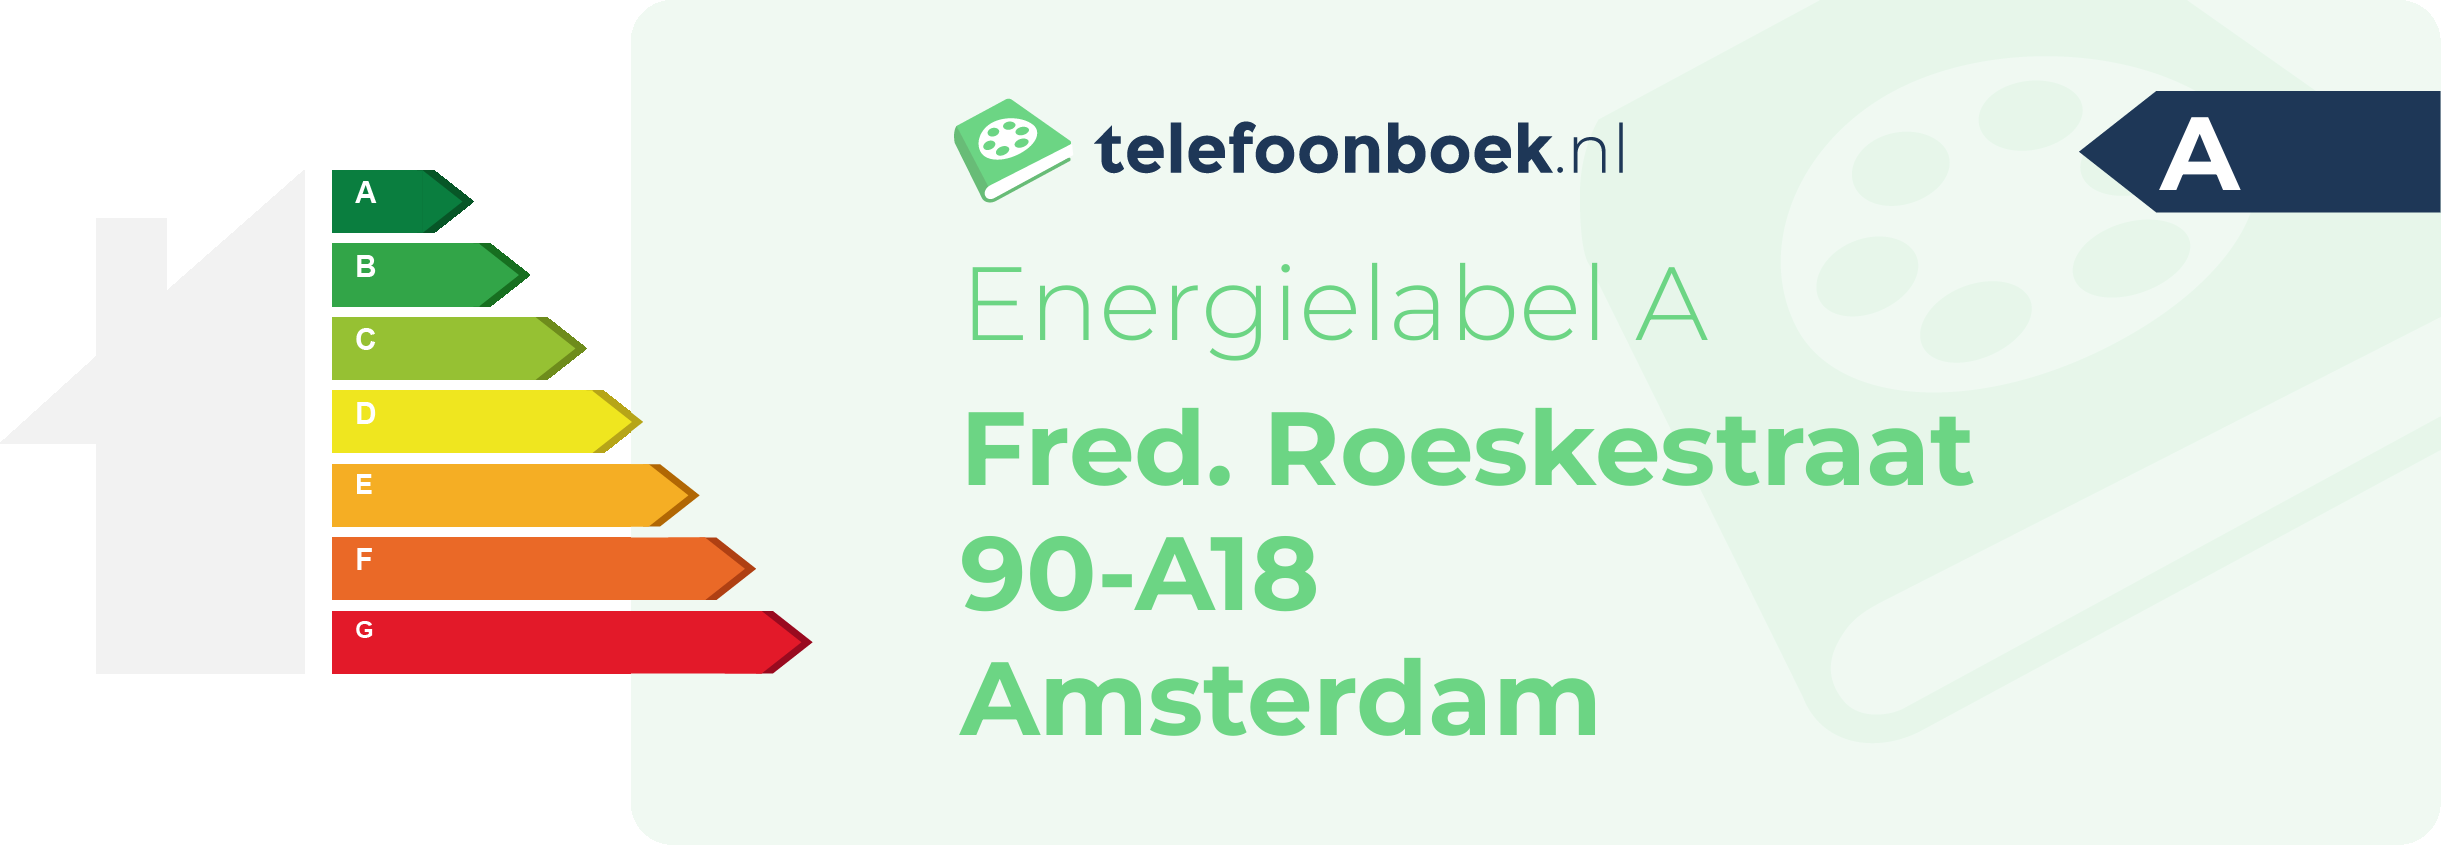 Energielabel Fred. Roeskestraat 90-A18 Amsterdam